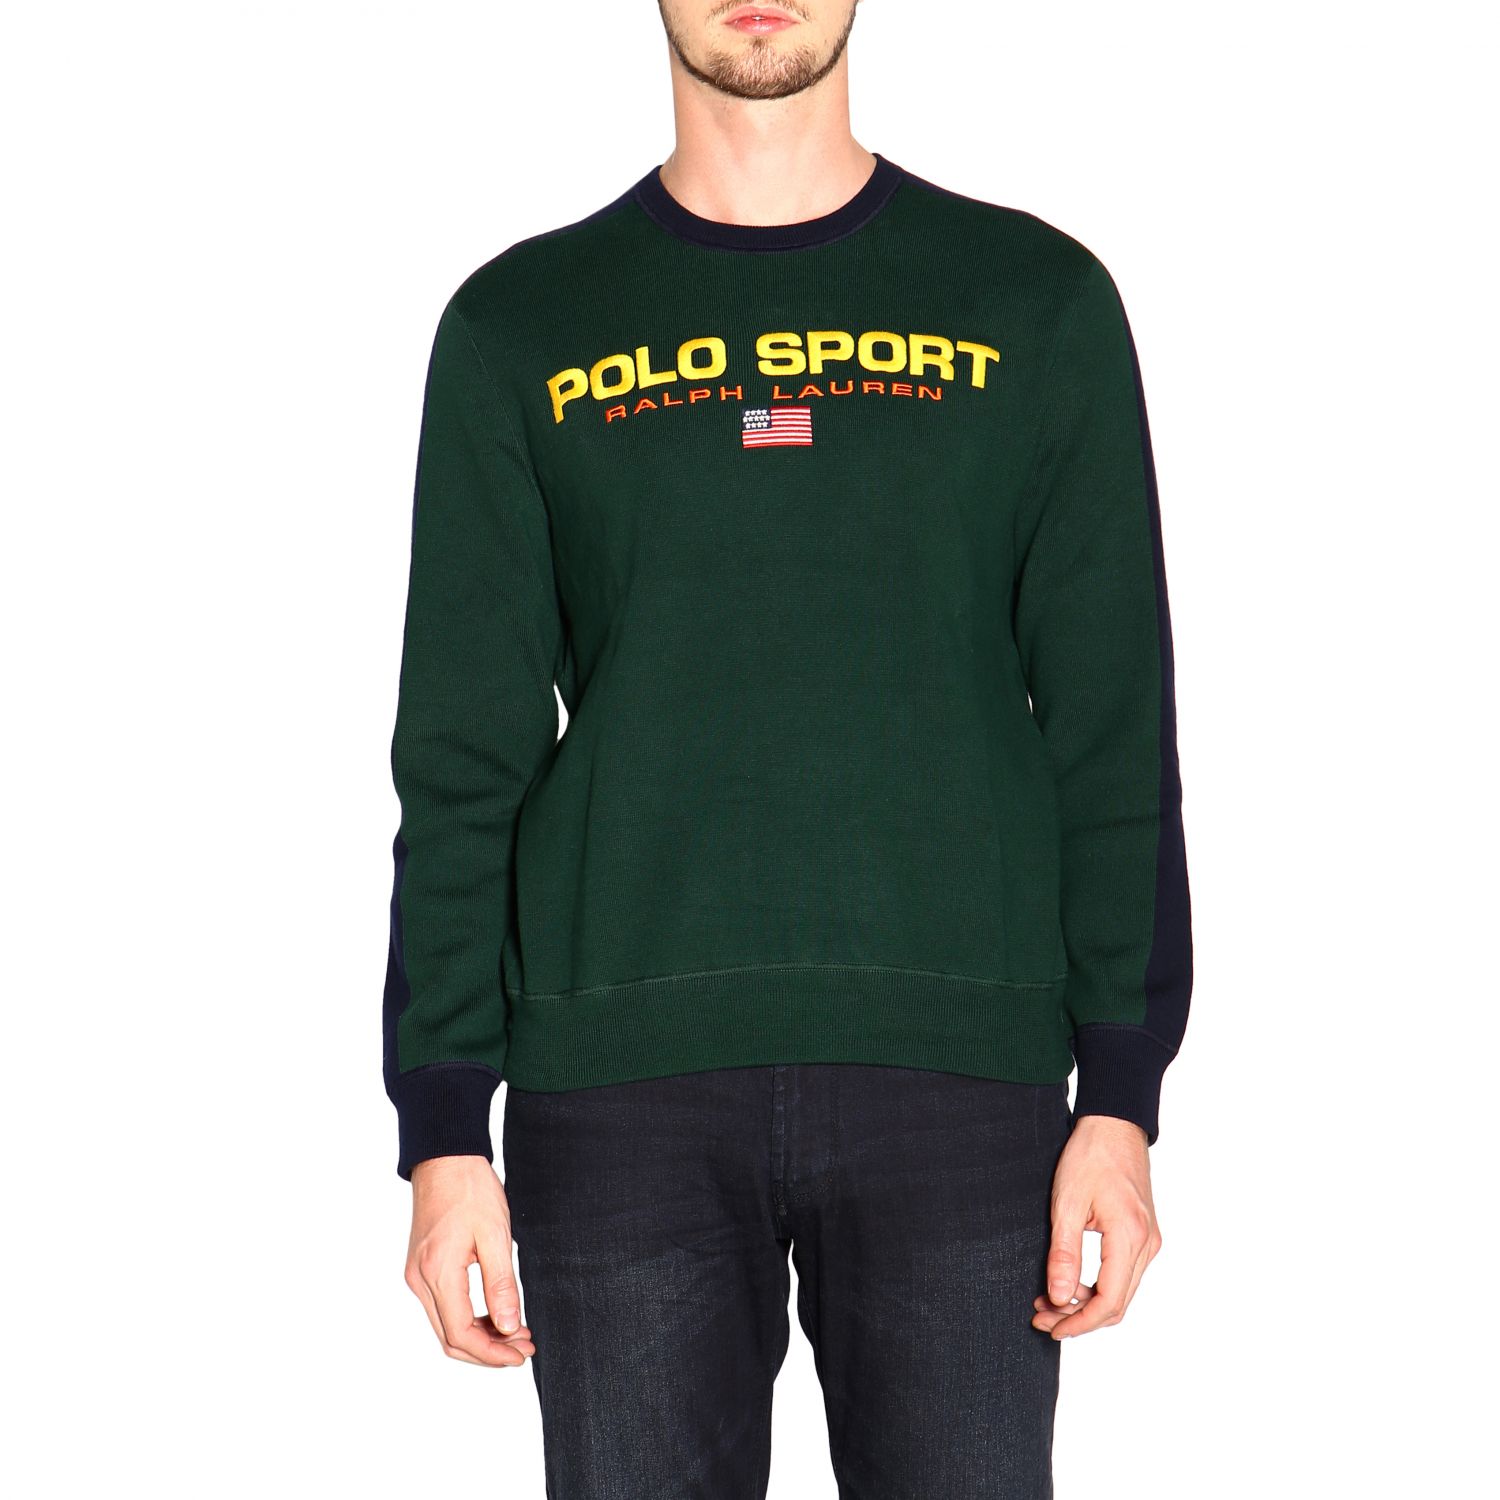 ralph lauren polo sport sweater